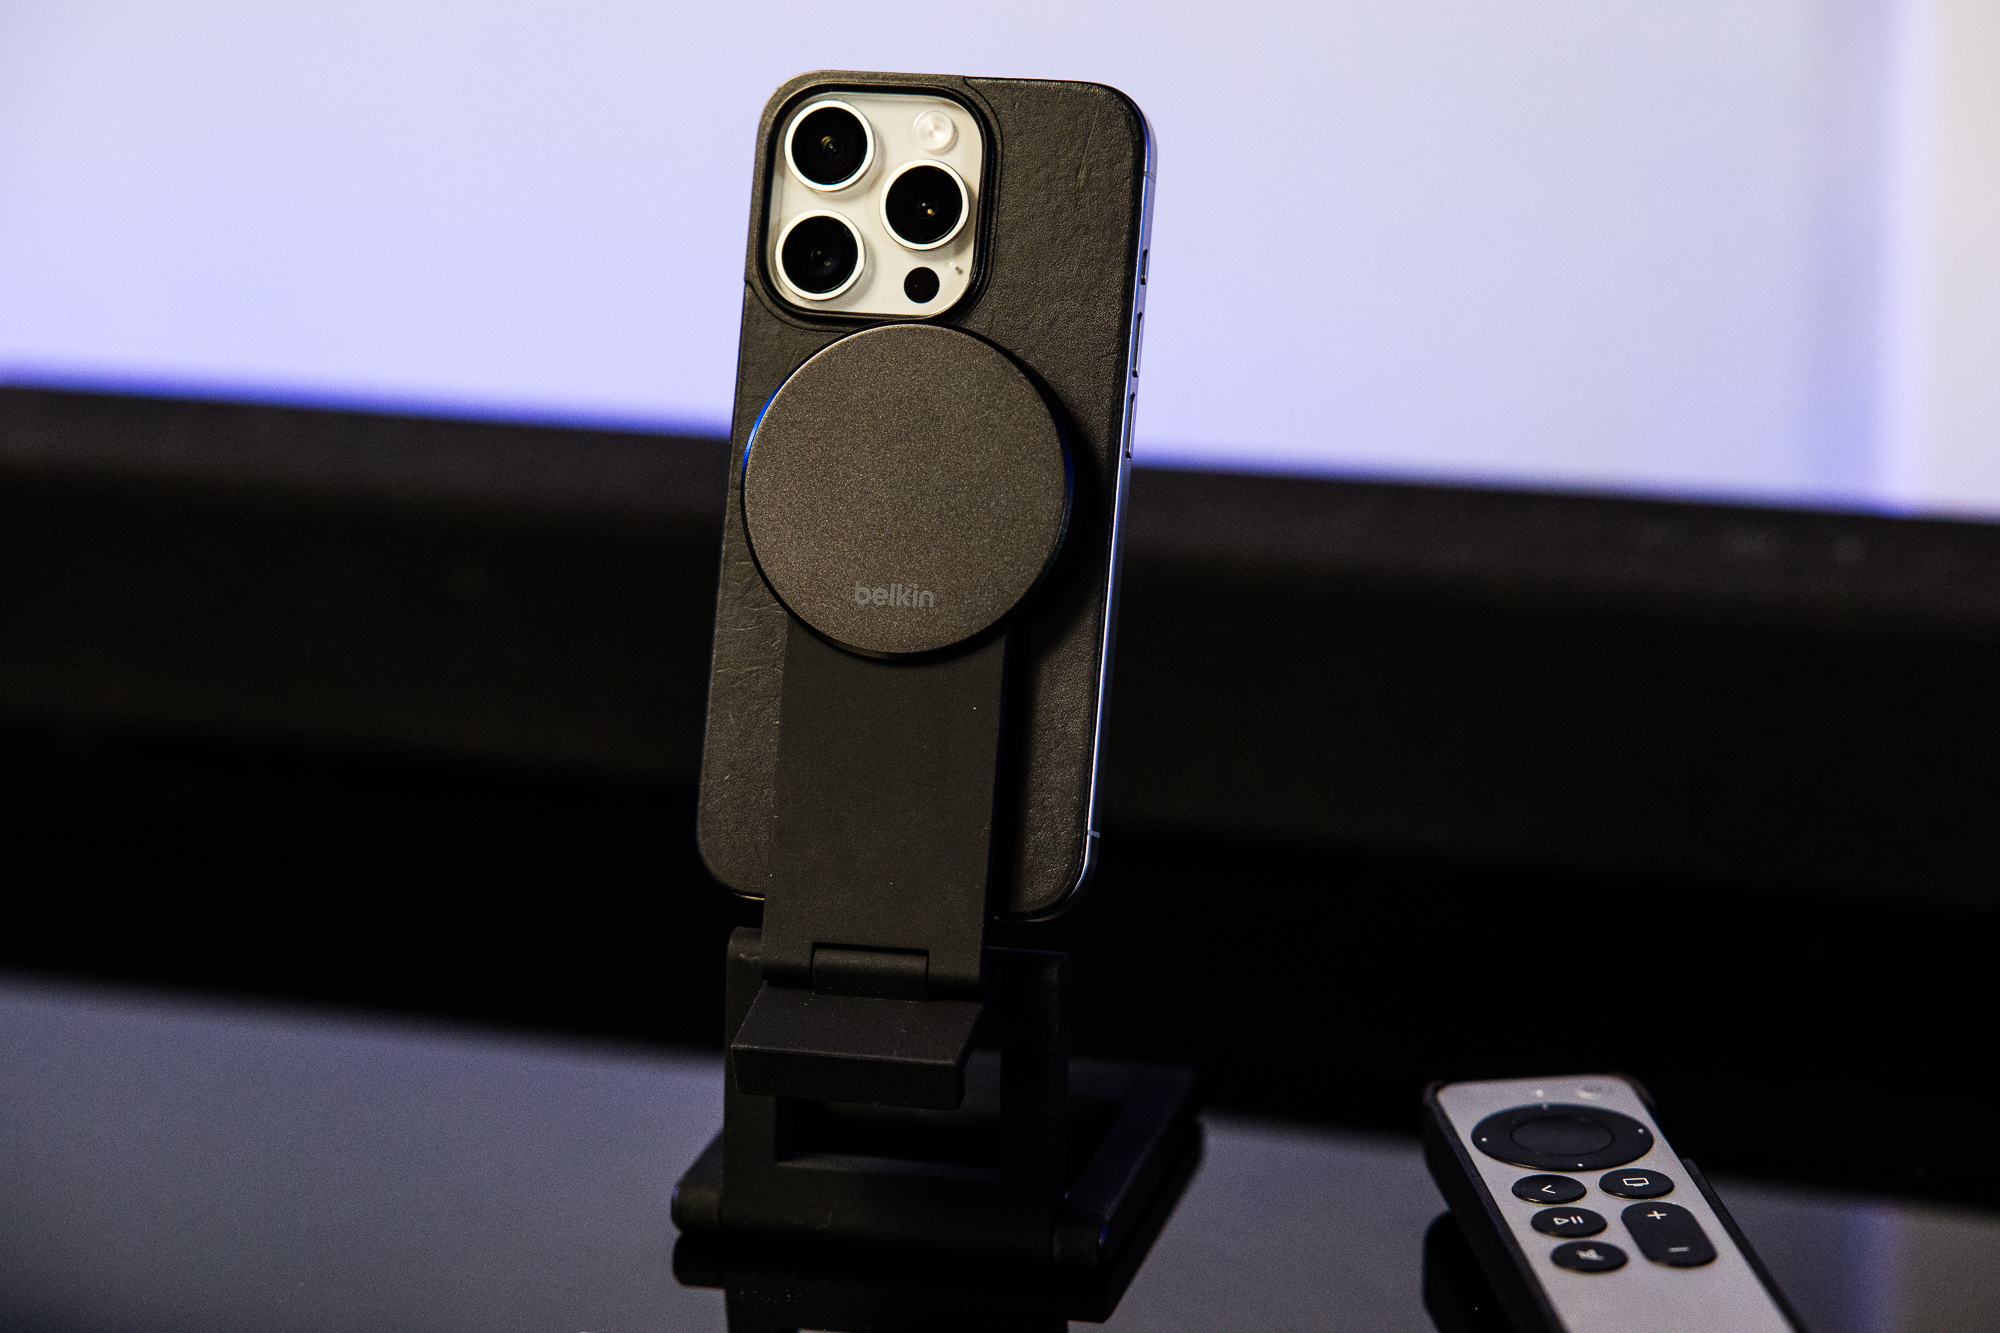 iPhone-держатель Belkin с технологией MagSafe для Apple TV 4K также работает в портретном режиме